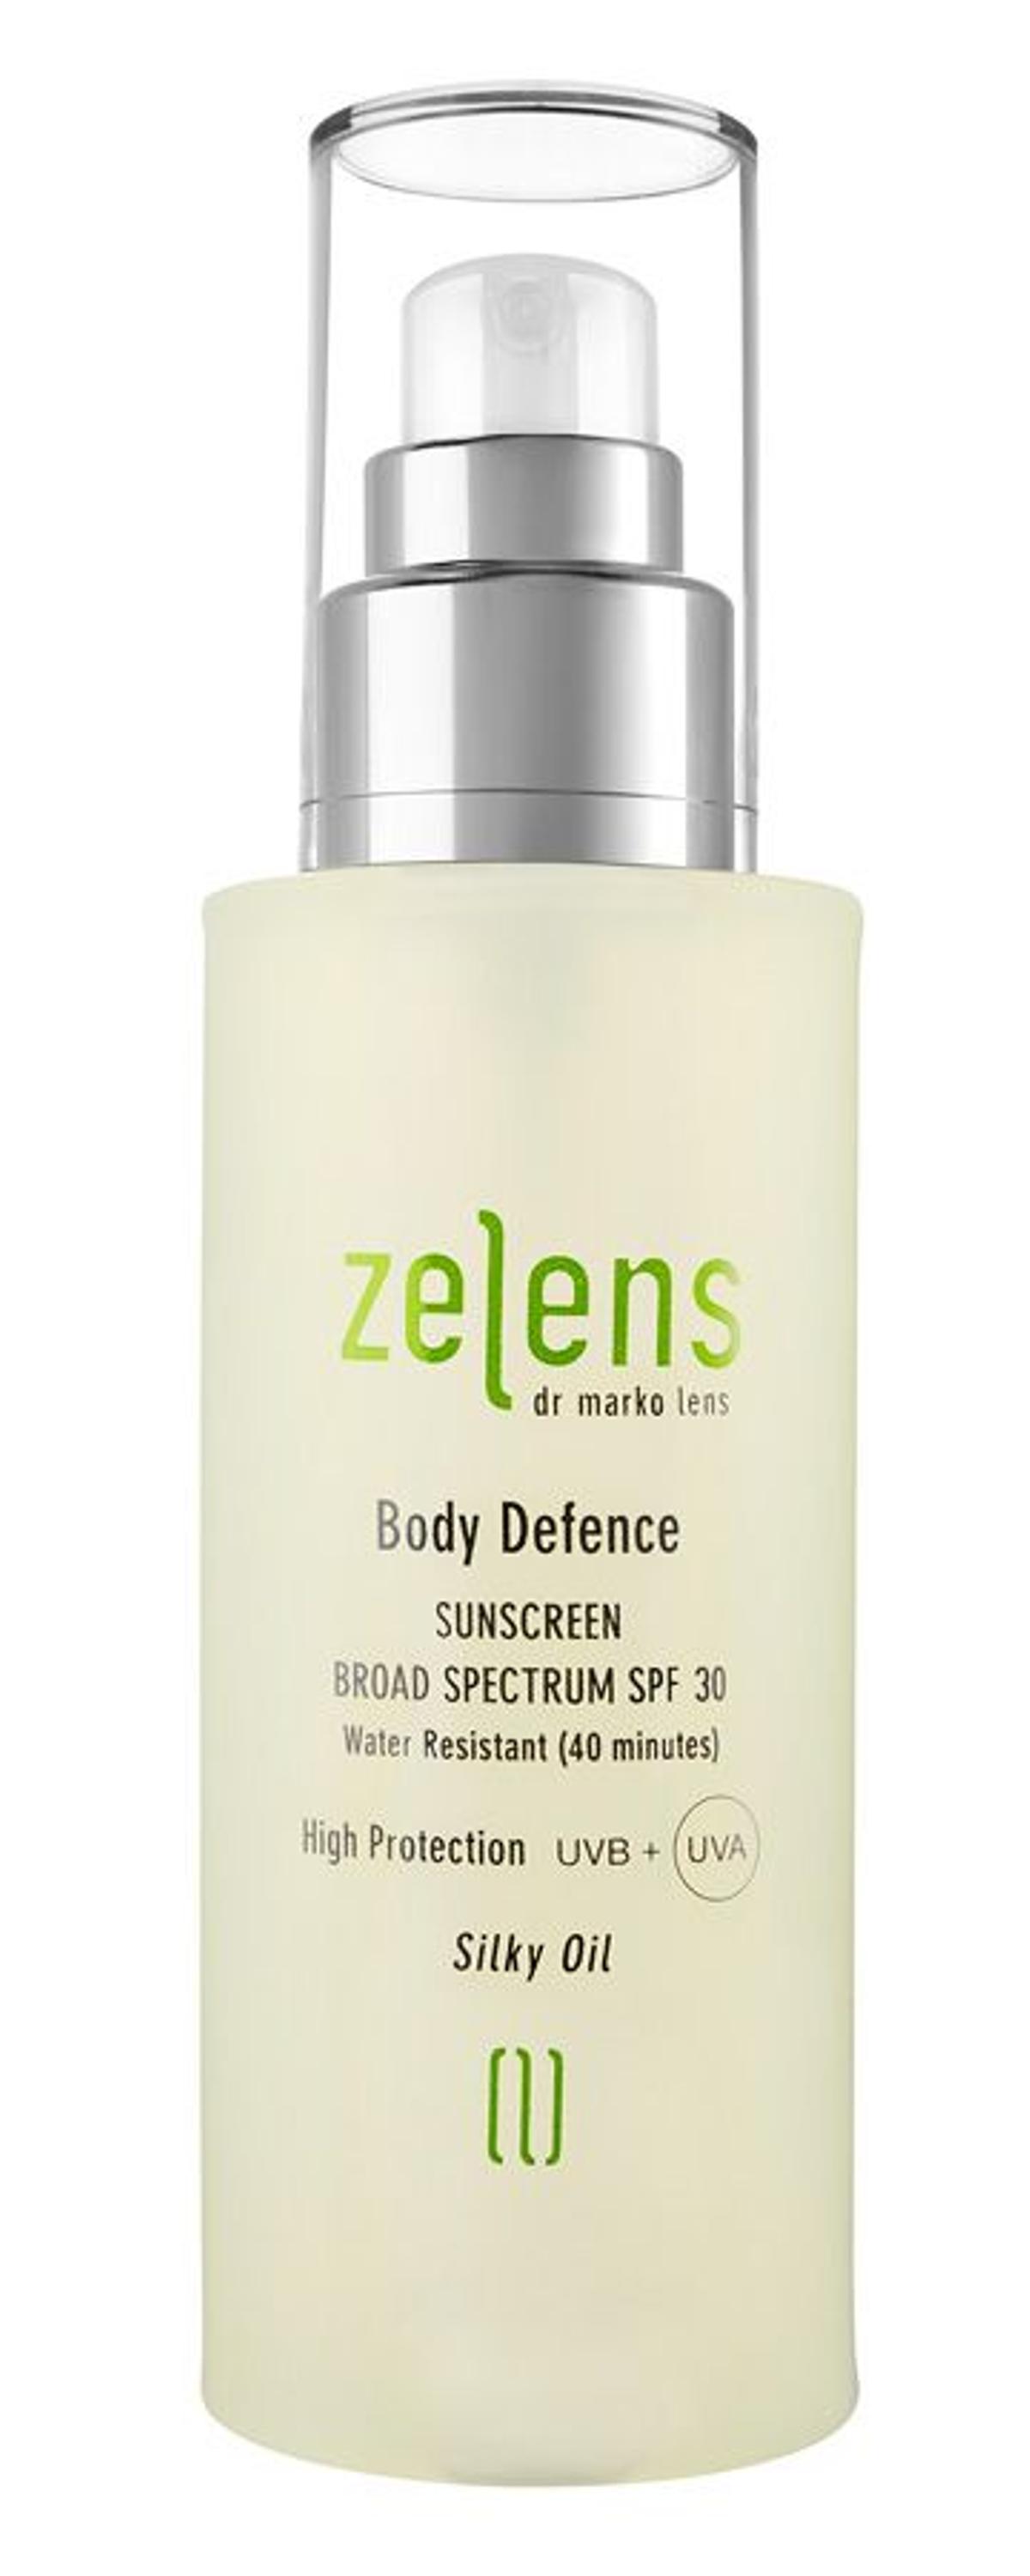 6. Body Defence Sunscreen, de Zelens